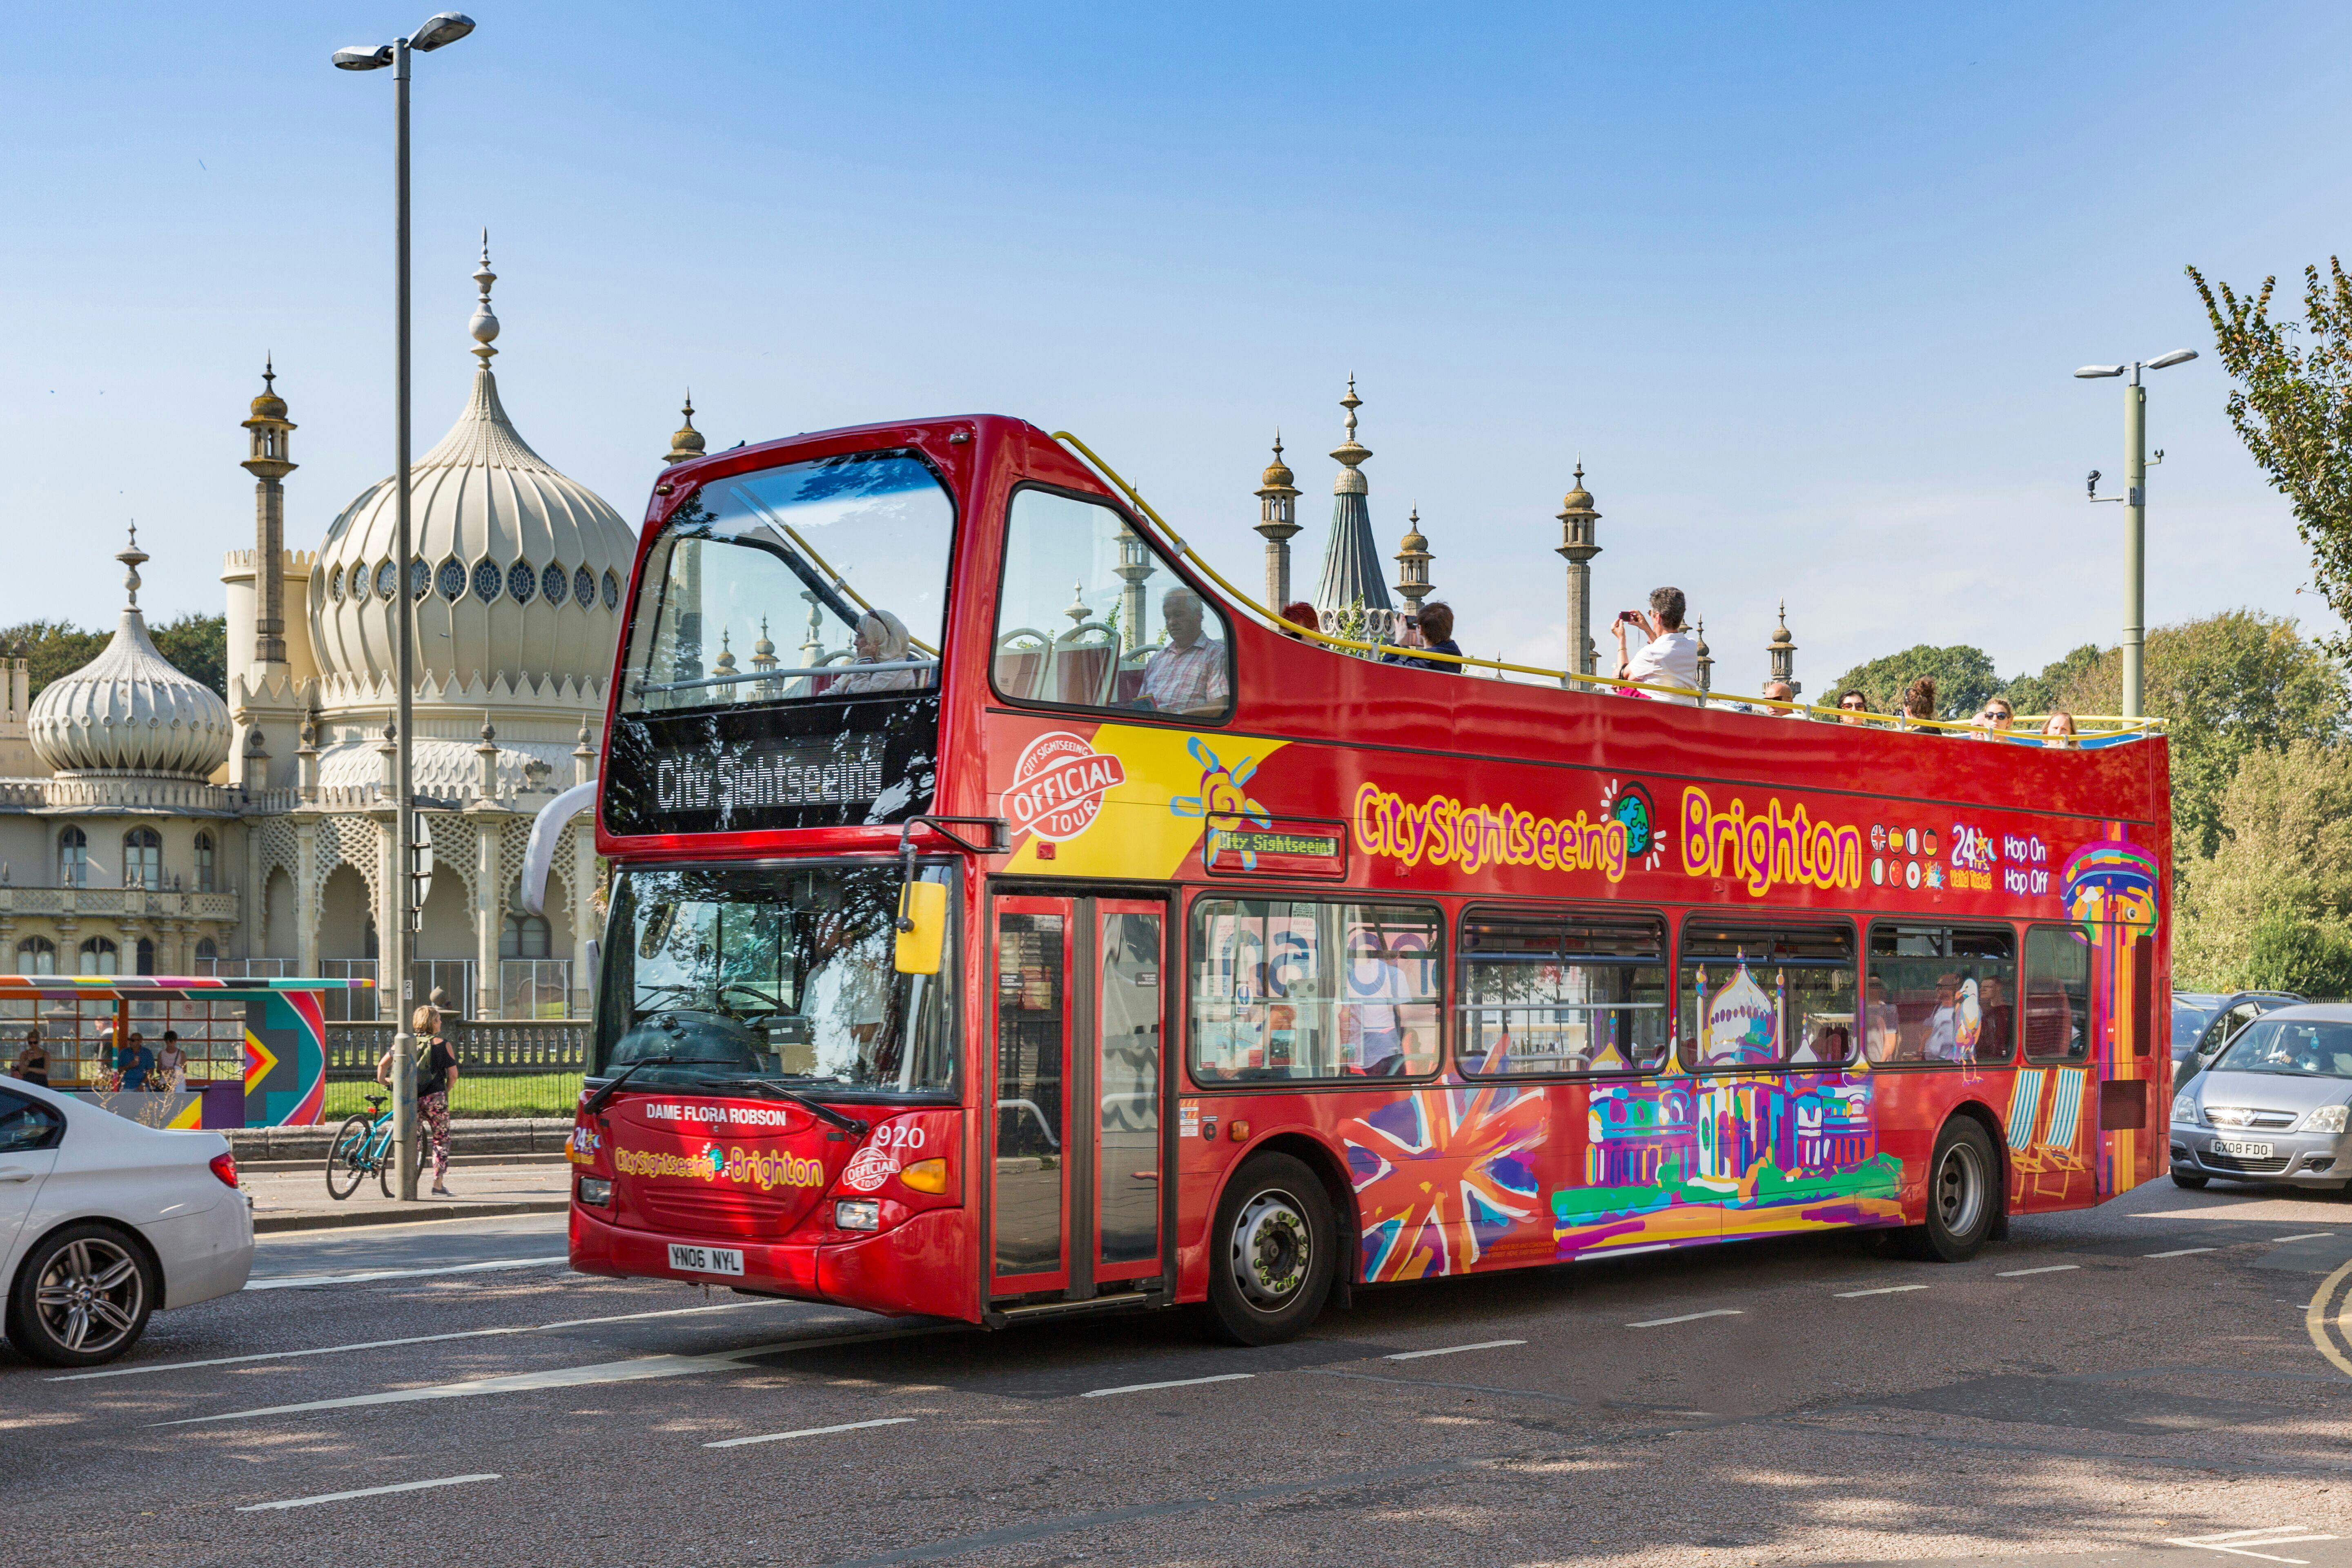 Wycieczka autobusowa typu hop-on hop-off po Brighton w ramach City Sightseeing